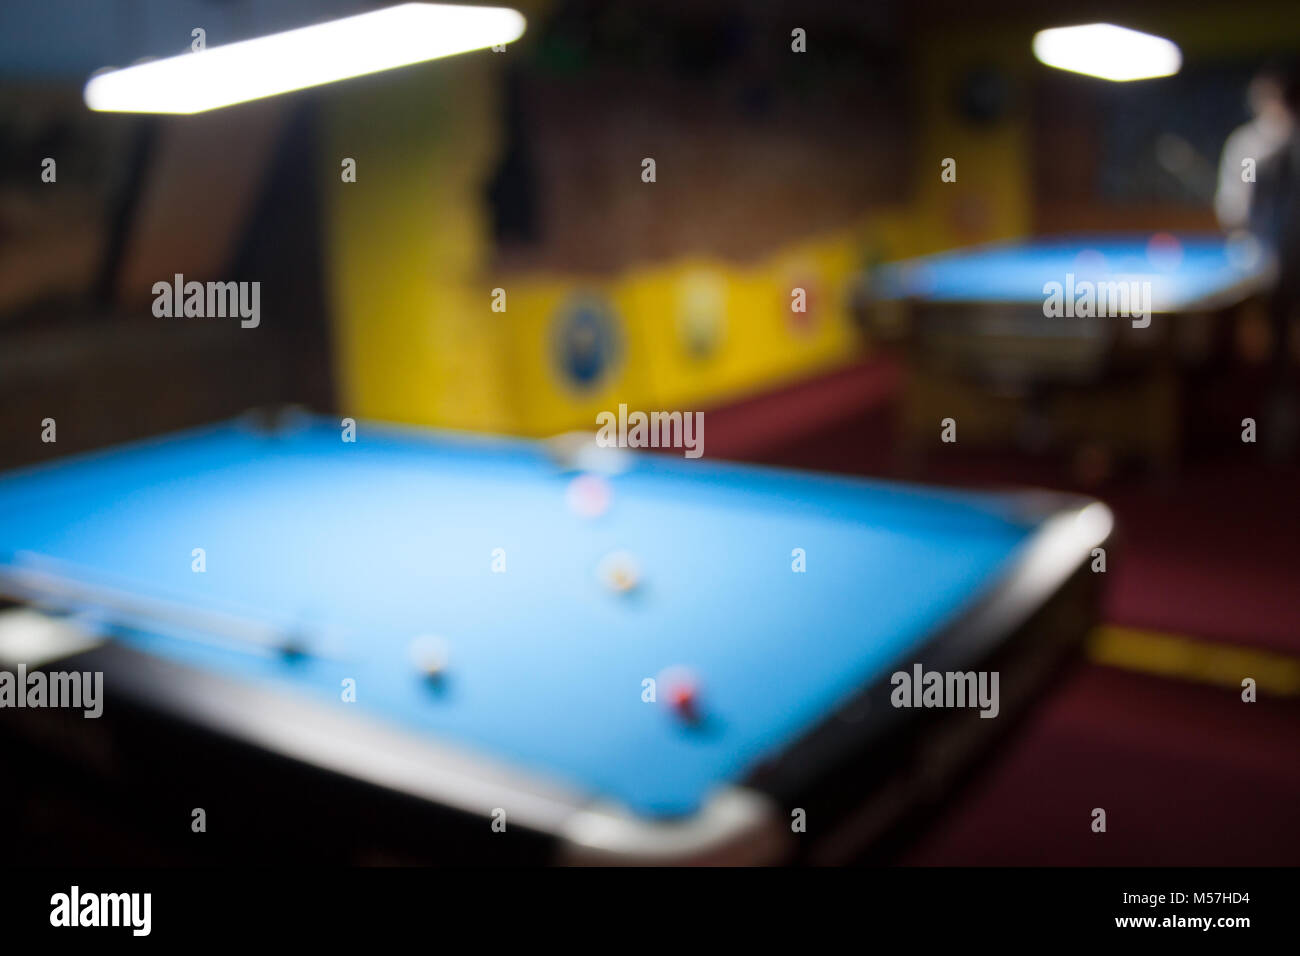 Defokussiertem Hintergrund der Billard Spielzimmer - Verschwommenes  Zusammensetzung der Pool Spiel Limousine mit dominanten multicolor Farben  und Glühlampen Neonlicht Stockfotografie - Alamy